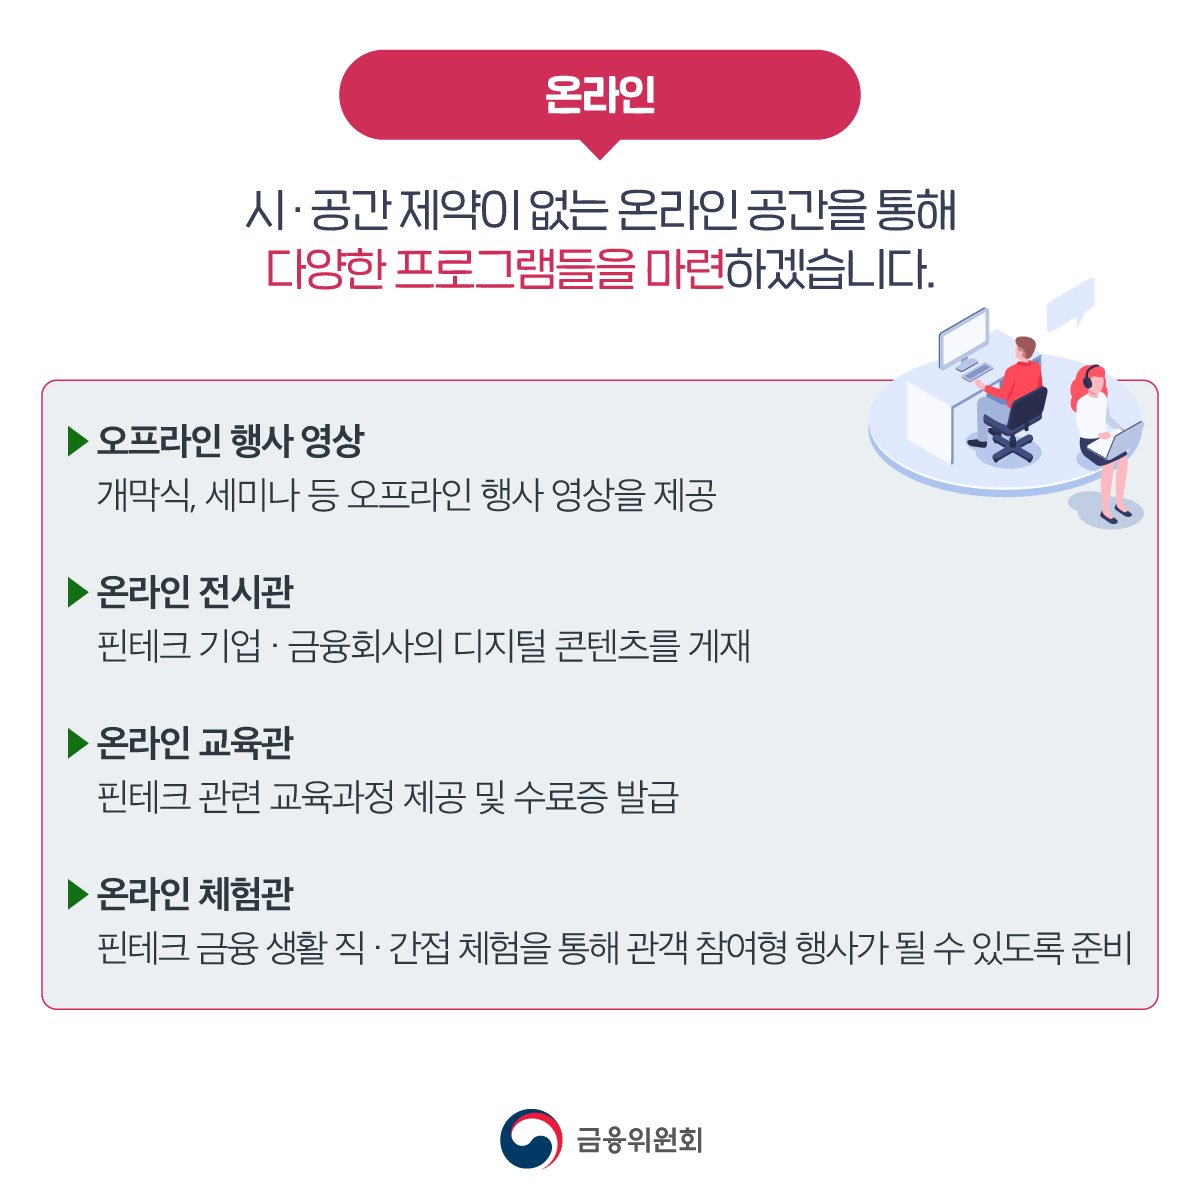 코리아 핀테크 위크 2022 개최